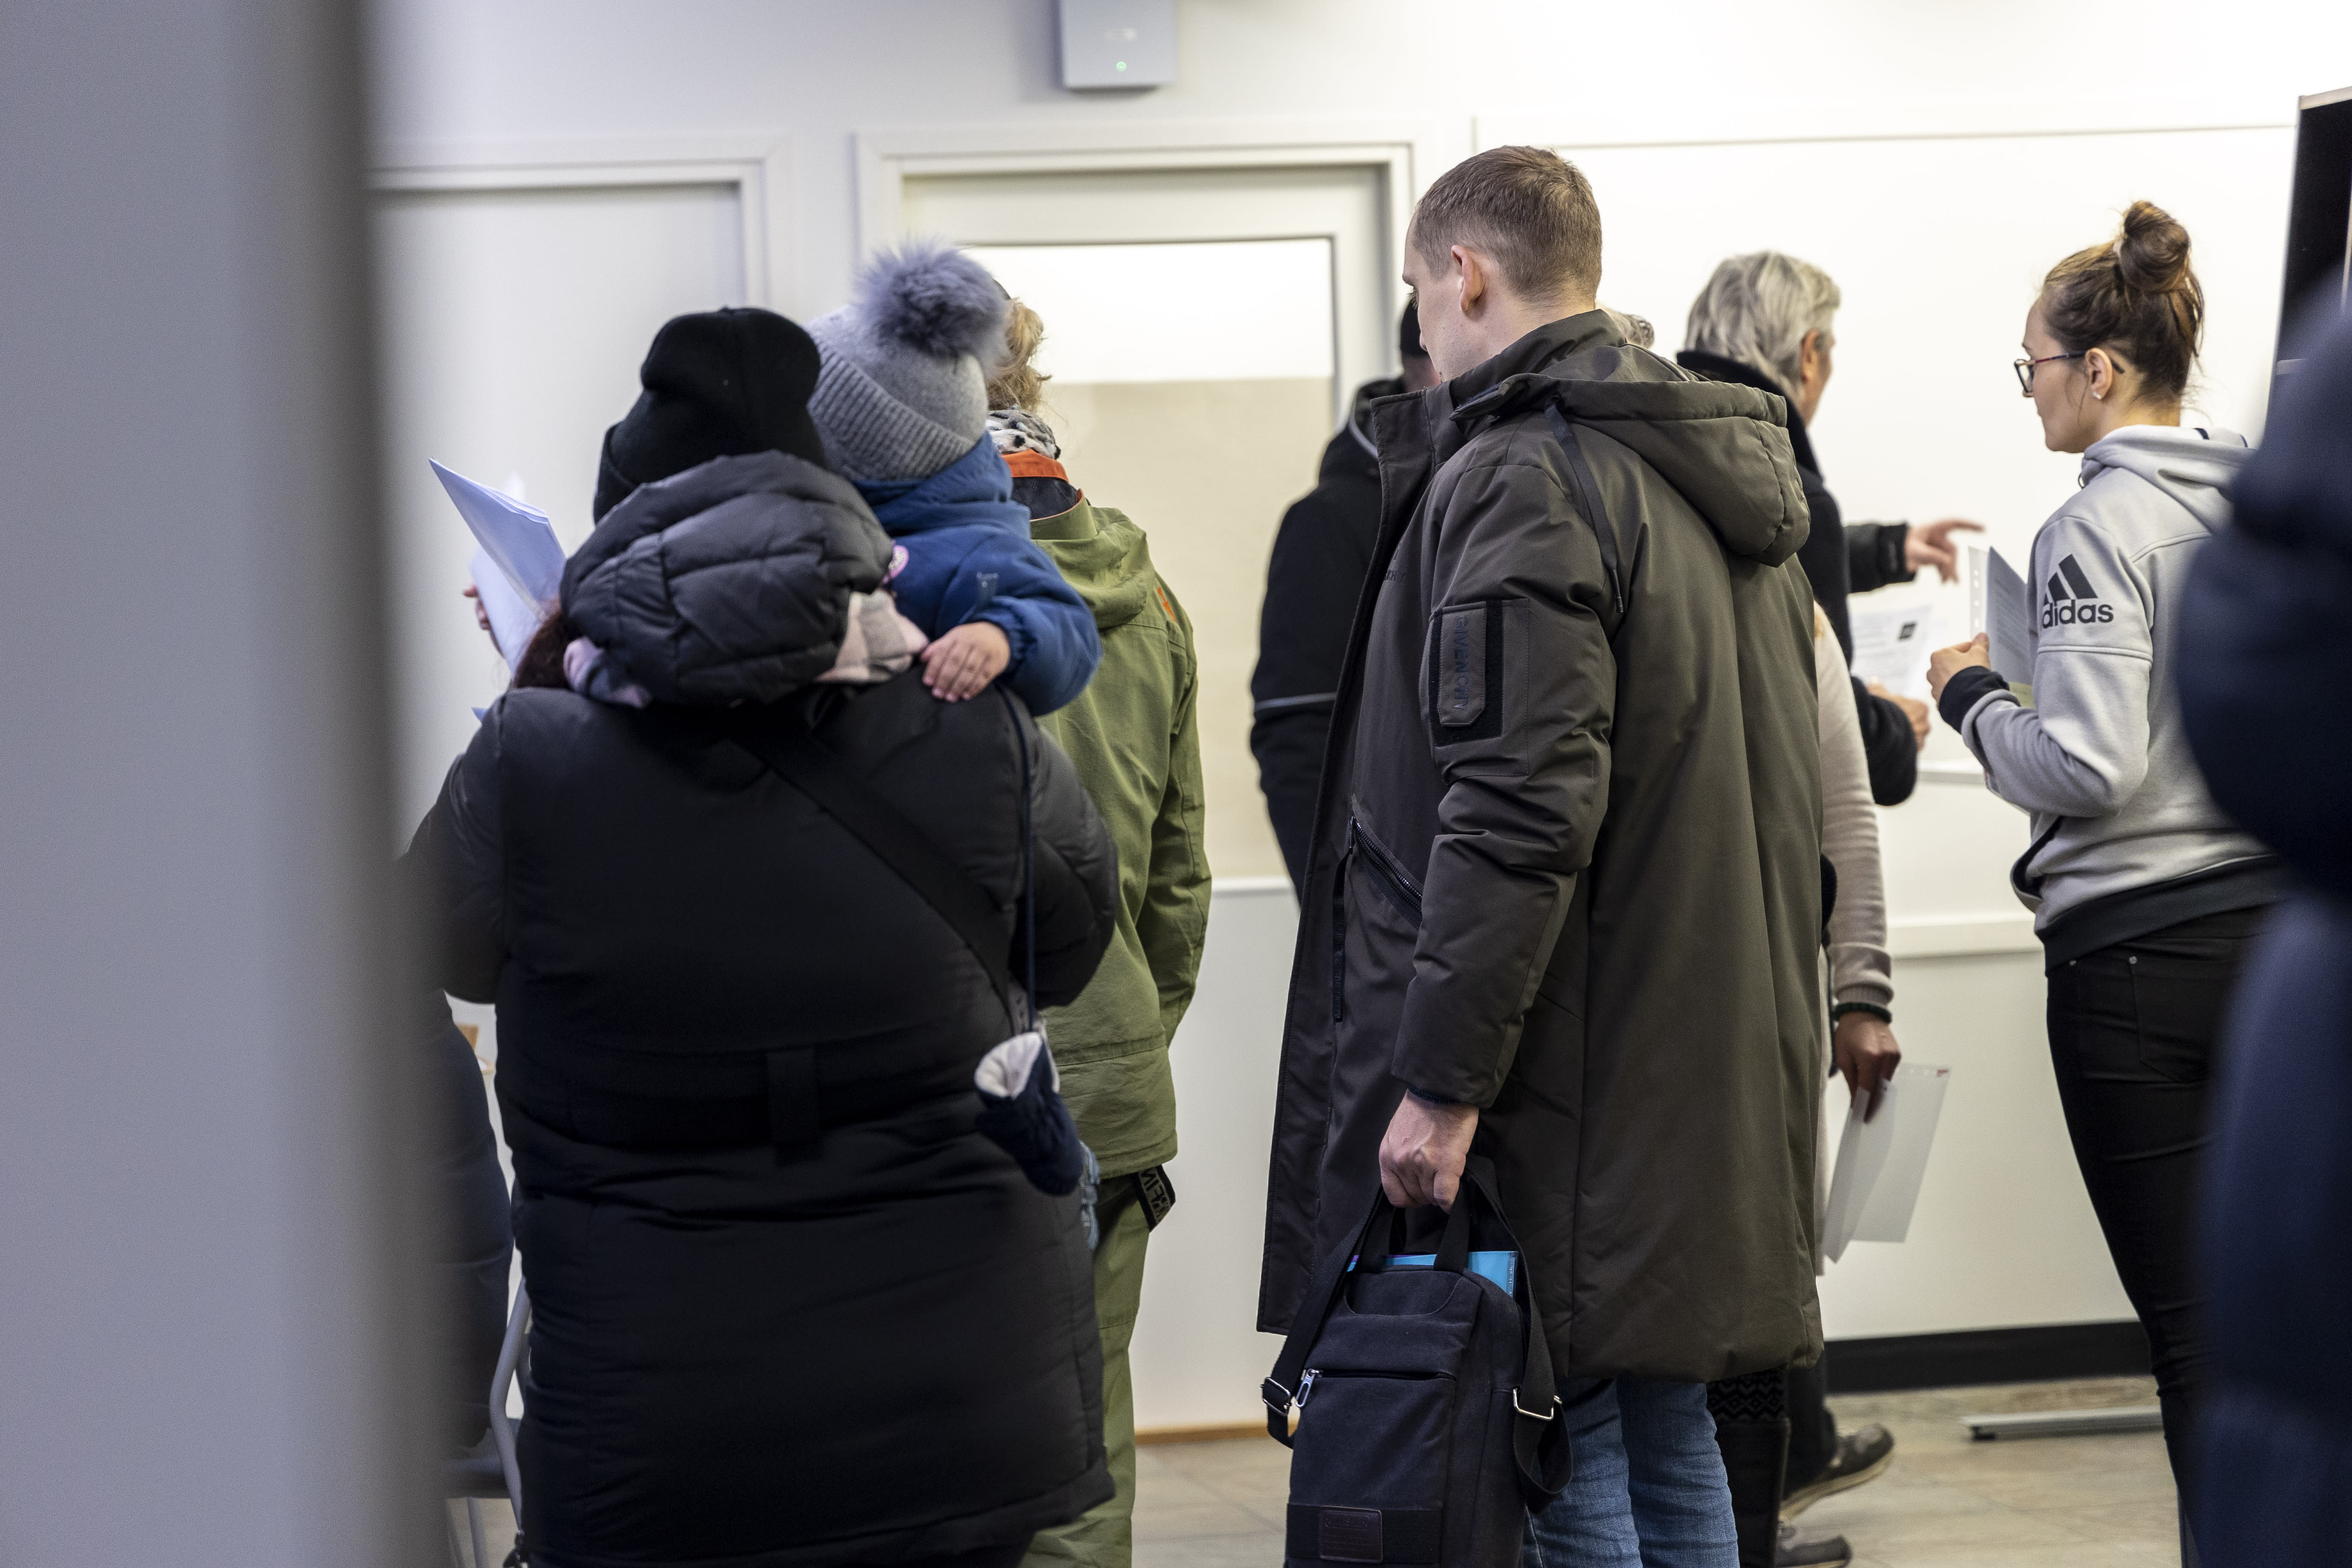 Verhandlungsführer der Regierung prüfen den Einsatz von Lebensmittelgutscheinen und Kürzungen der Flüchtlingsquoten, da Finnland versucht, bei der Einwanderung Geld zu sparen